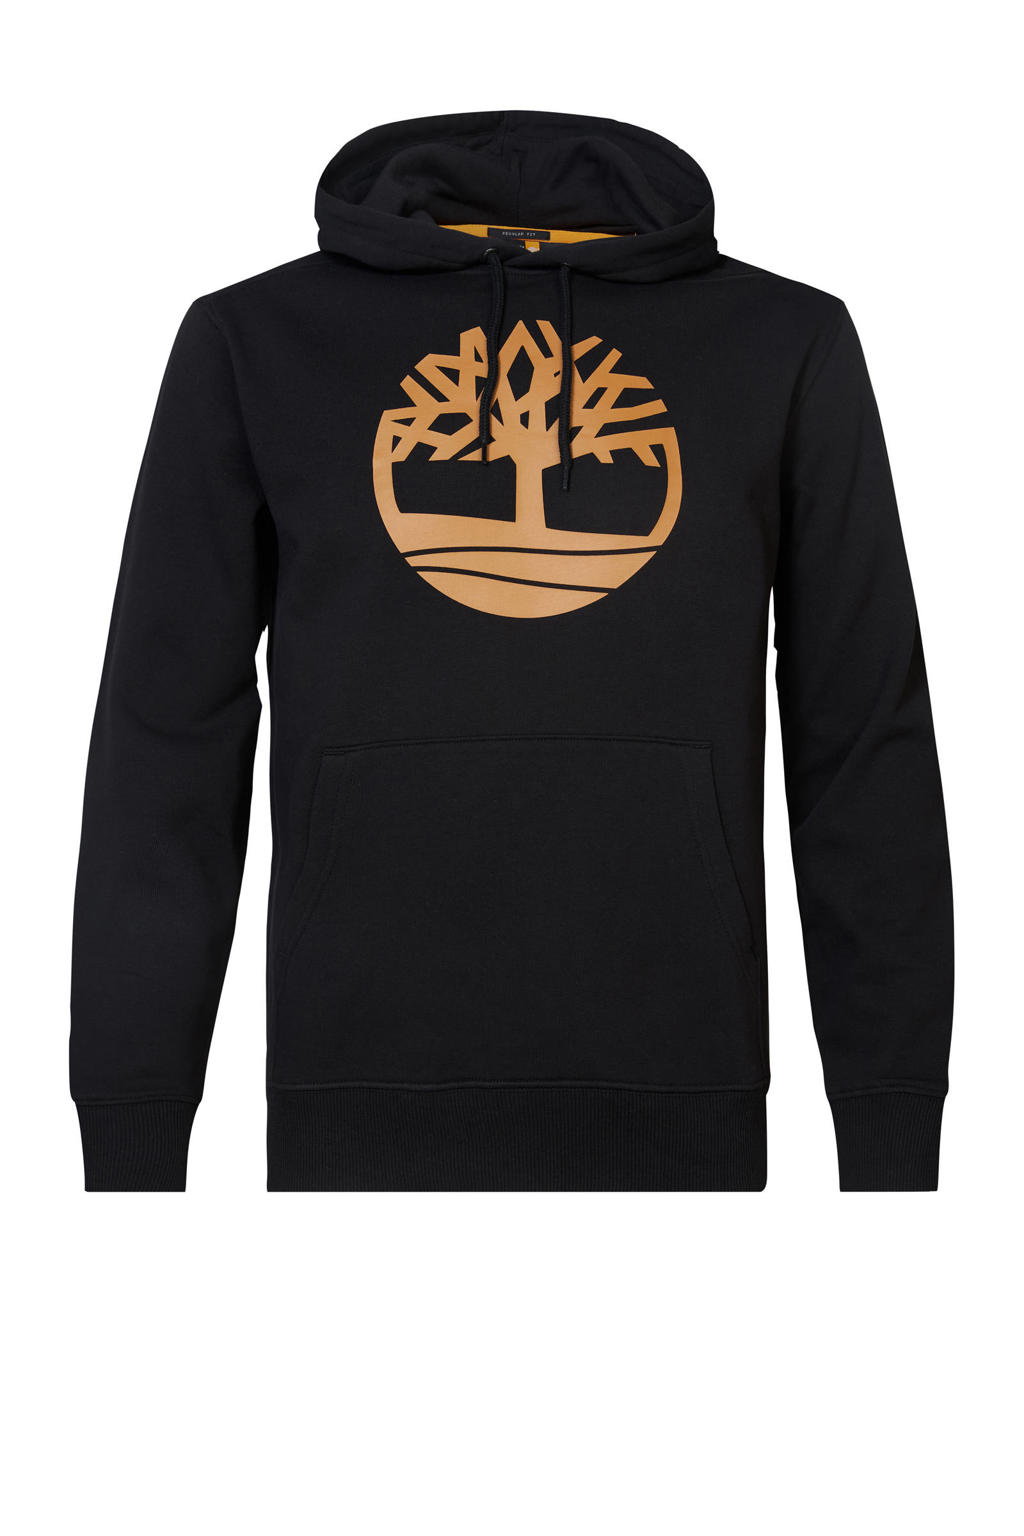 Timberland hoodie zwart